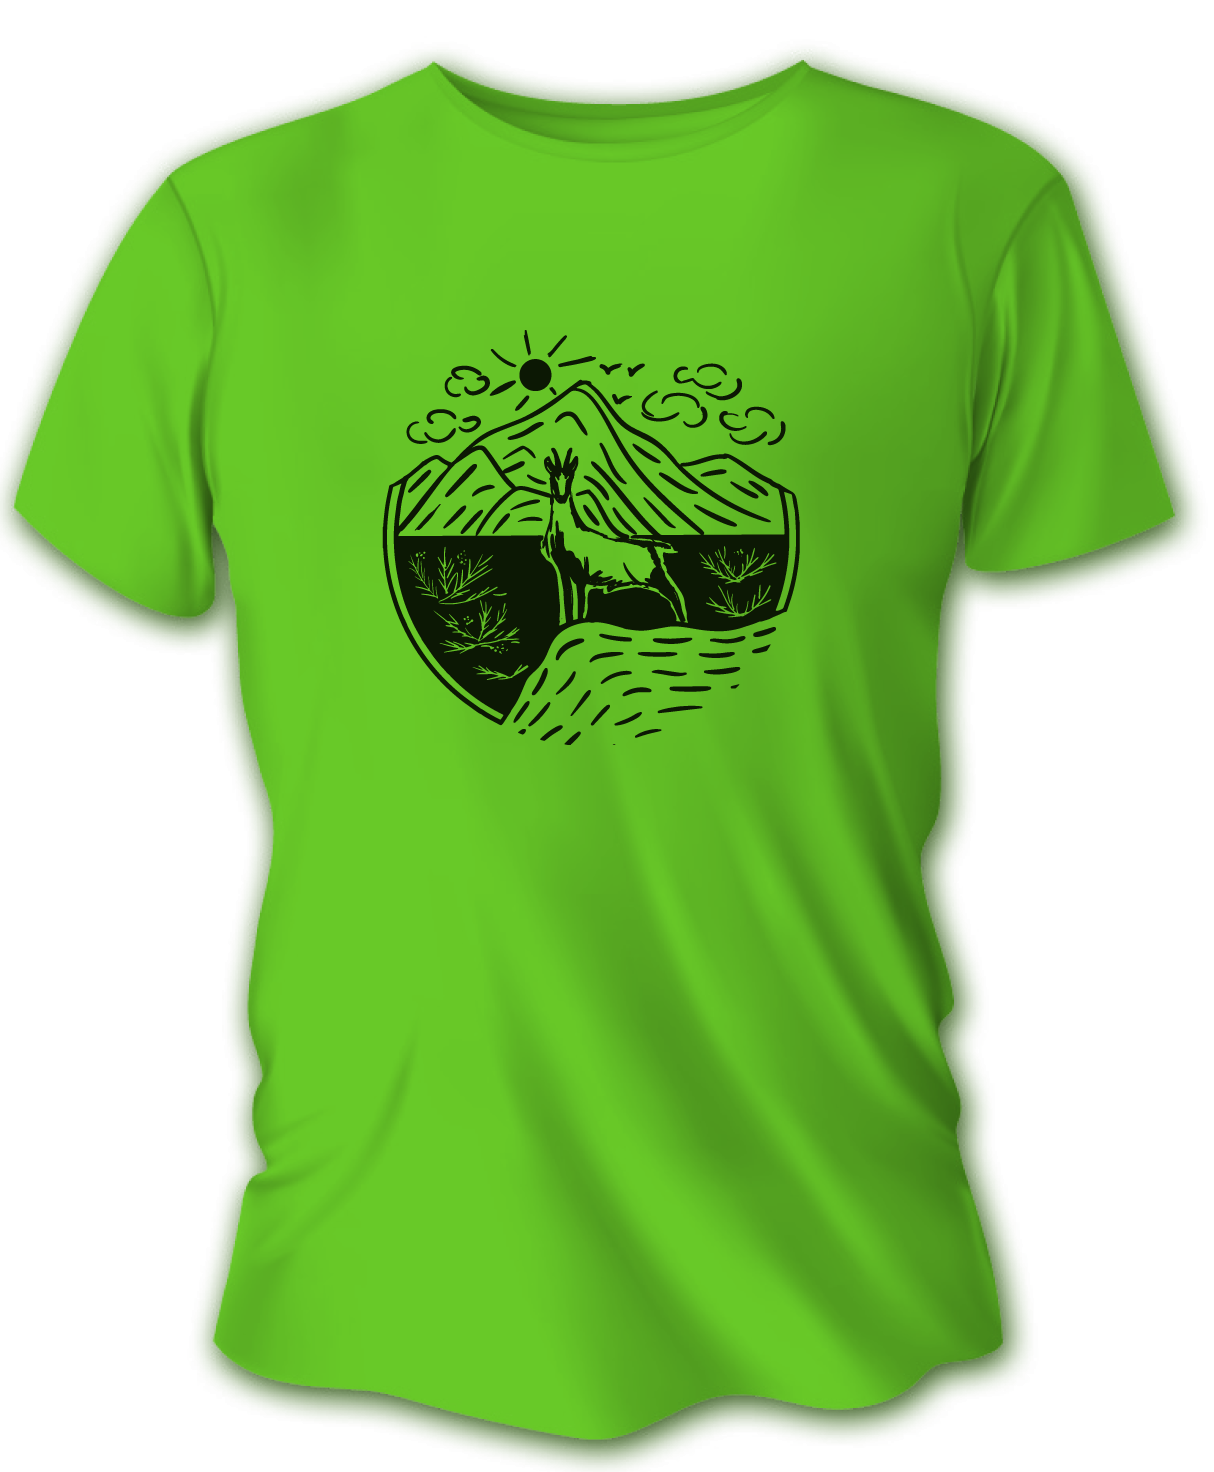 Pánske poľovnícke tričko TETRAO kamzík - bledozelené   M